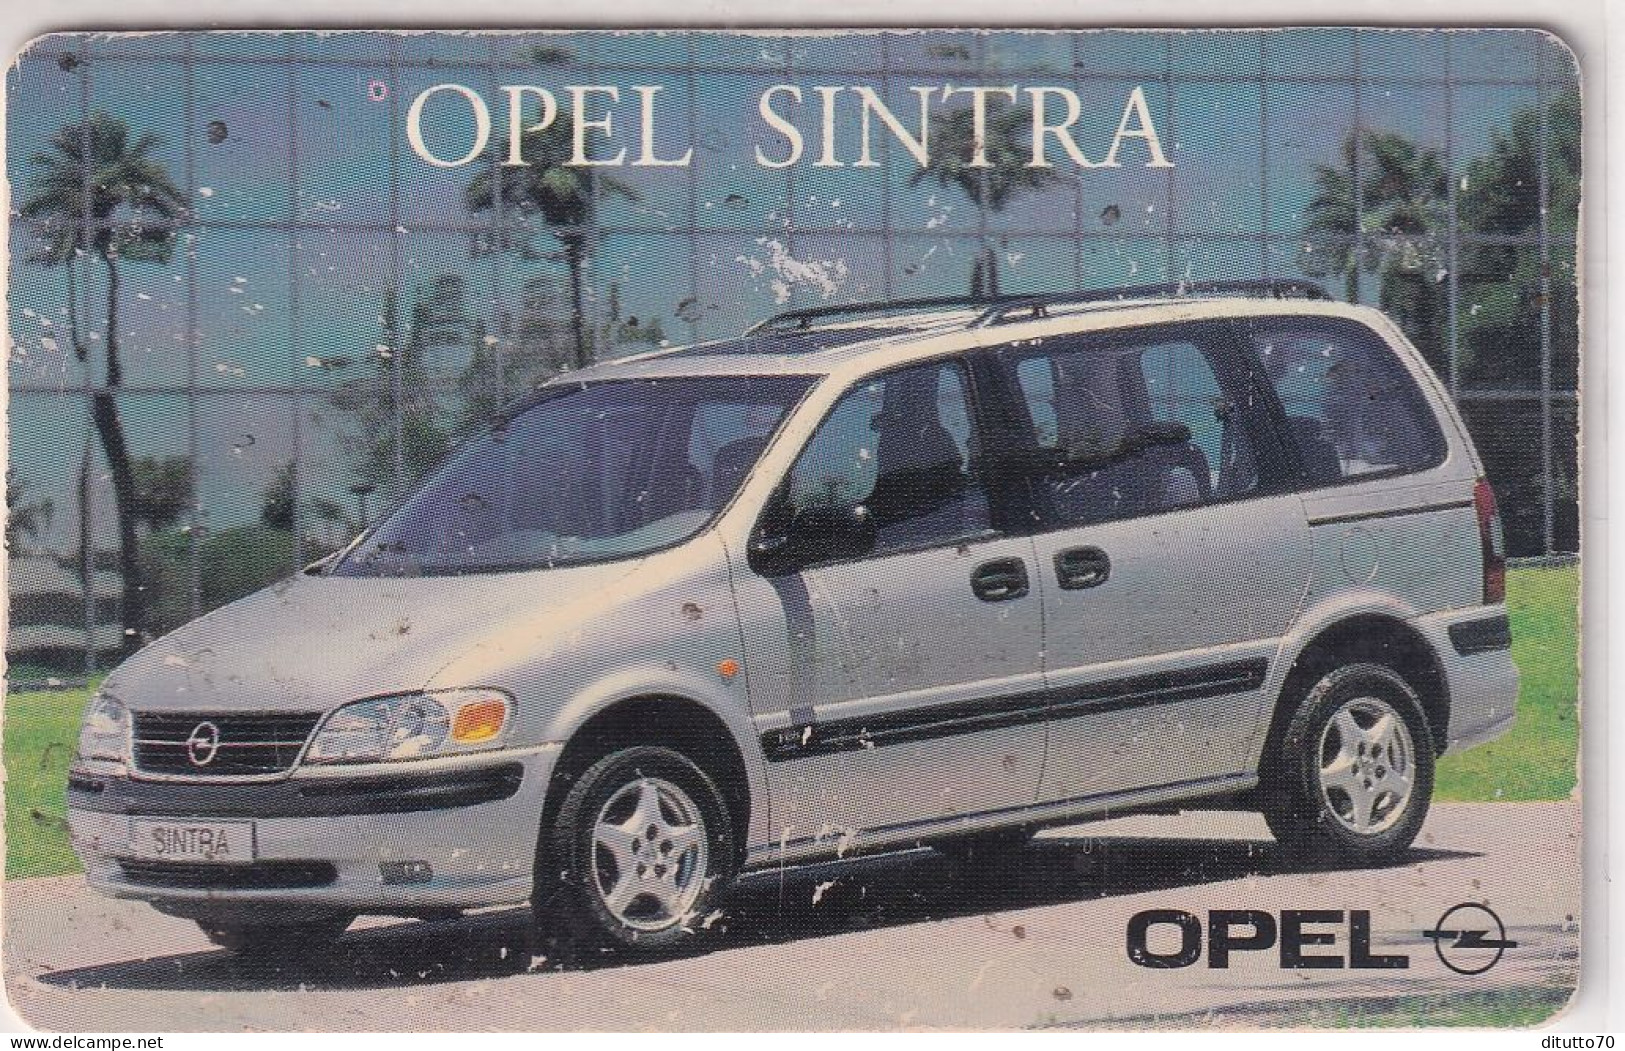 Calendarietto - Opel Astra - Sintoni Antnino - Anno 1997 - Small : 1991-00